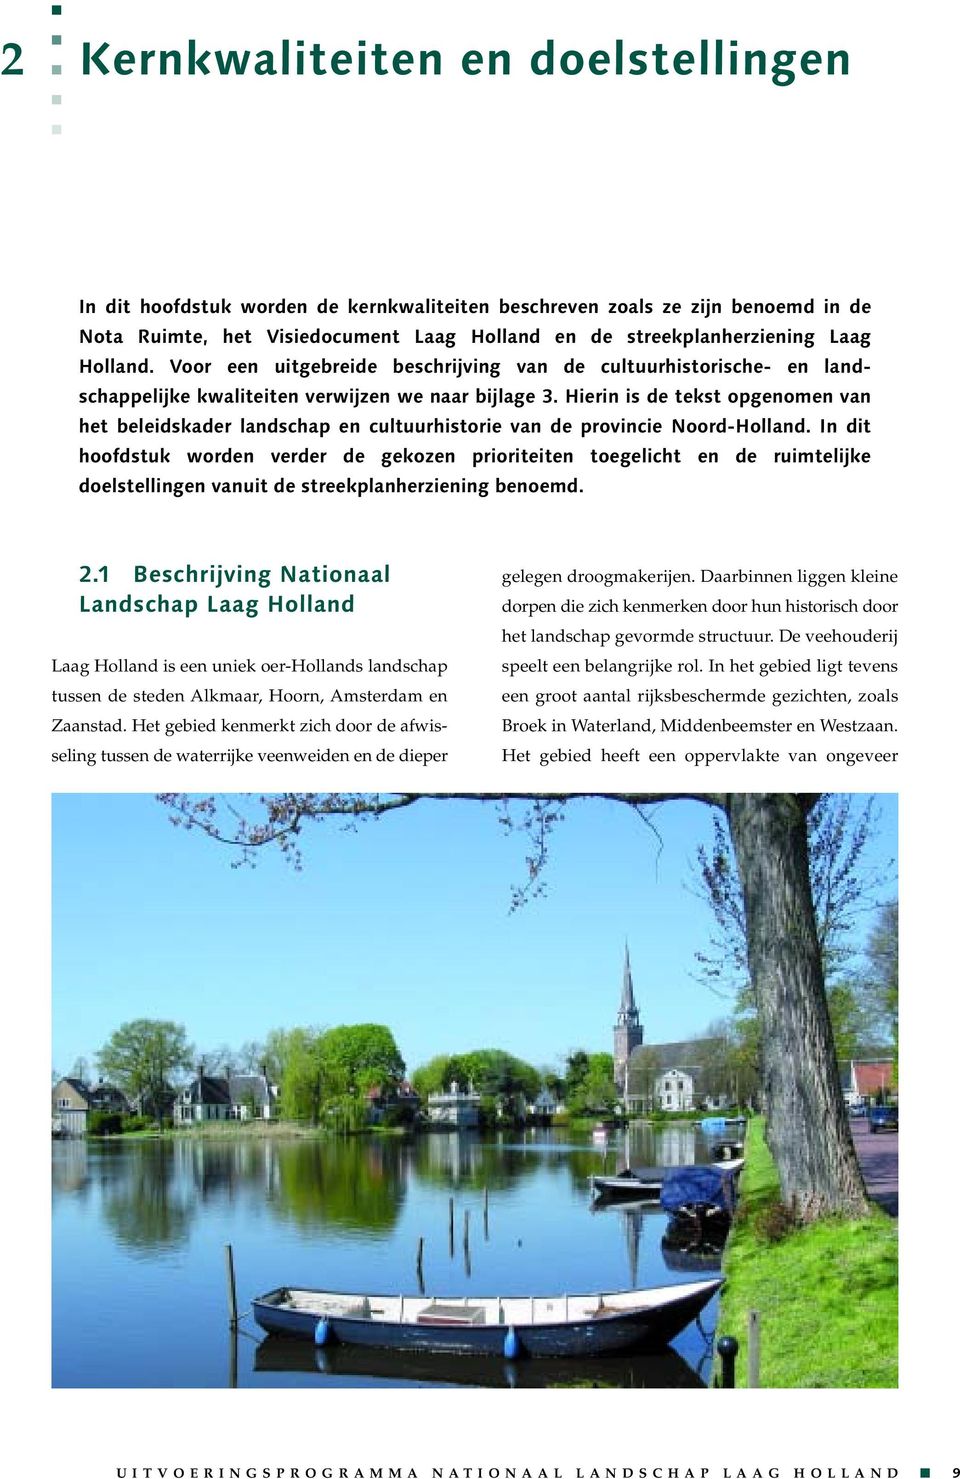 Hierin is de tekst opgenomen van het beleidskader landschap en cultuurhistorie van de provincie Noord-Holland.